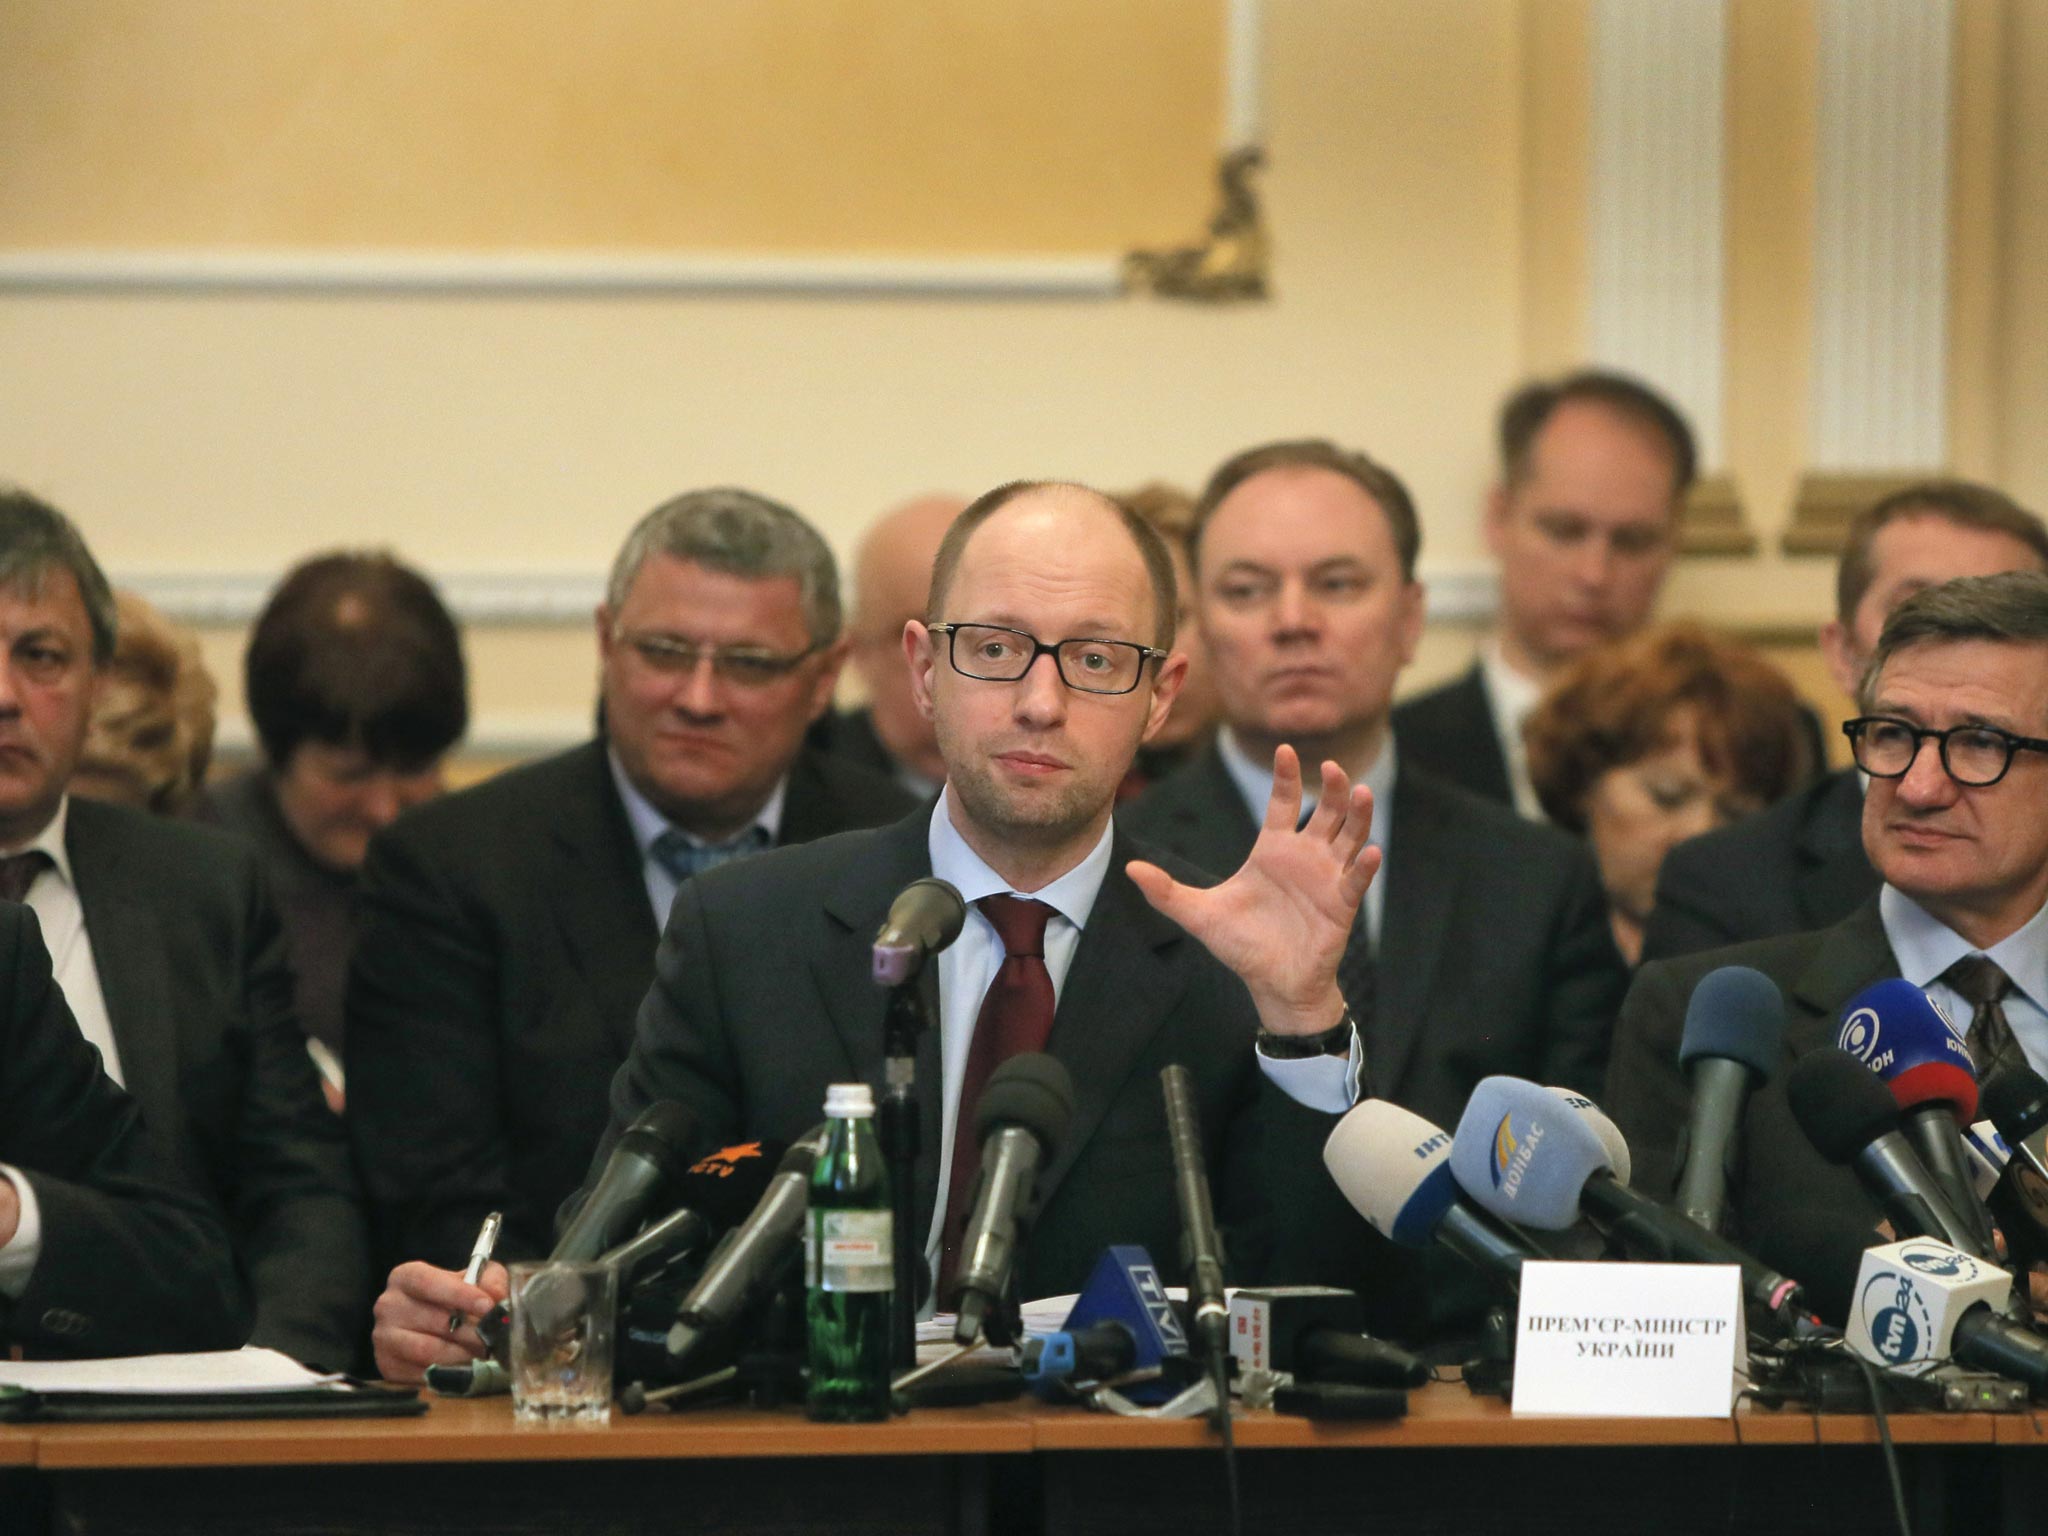 Ukraine's prime minister Arseniy Yatsenyuk (center) speaks during his meeting with regional leaders in Donetsk, Ukraine